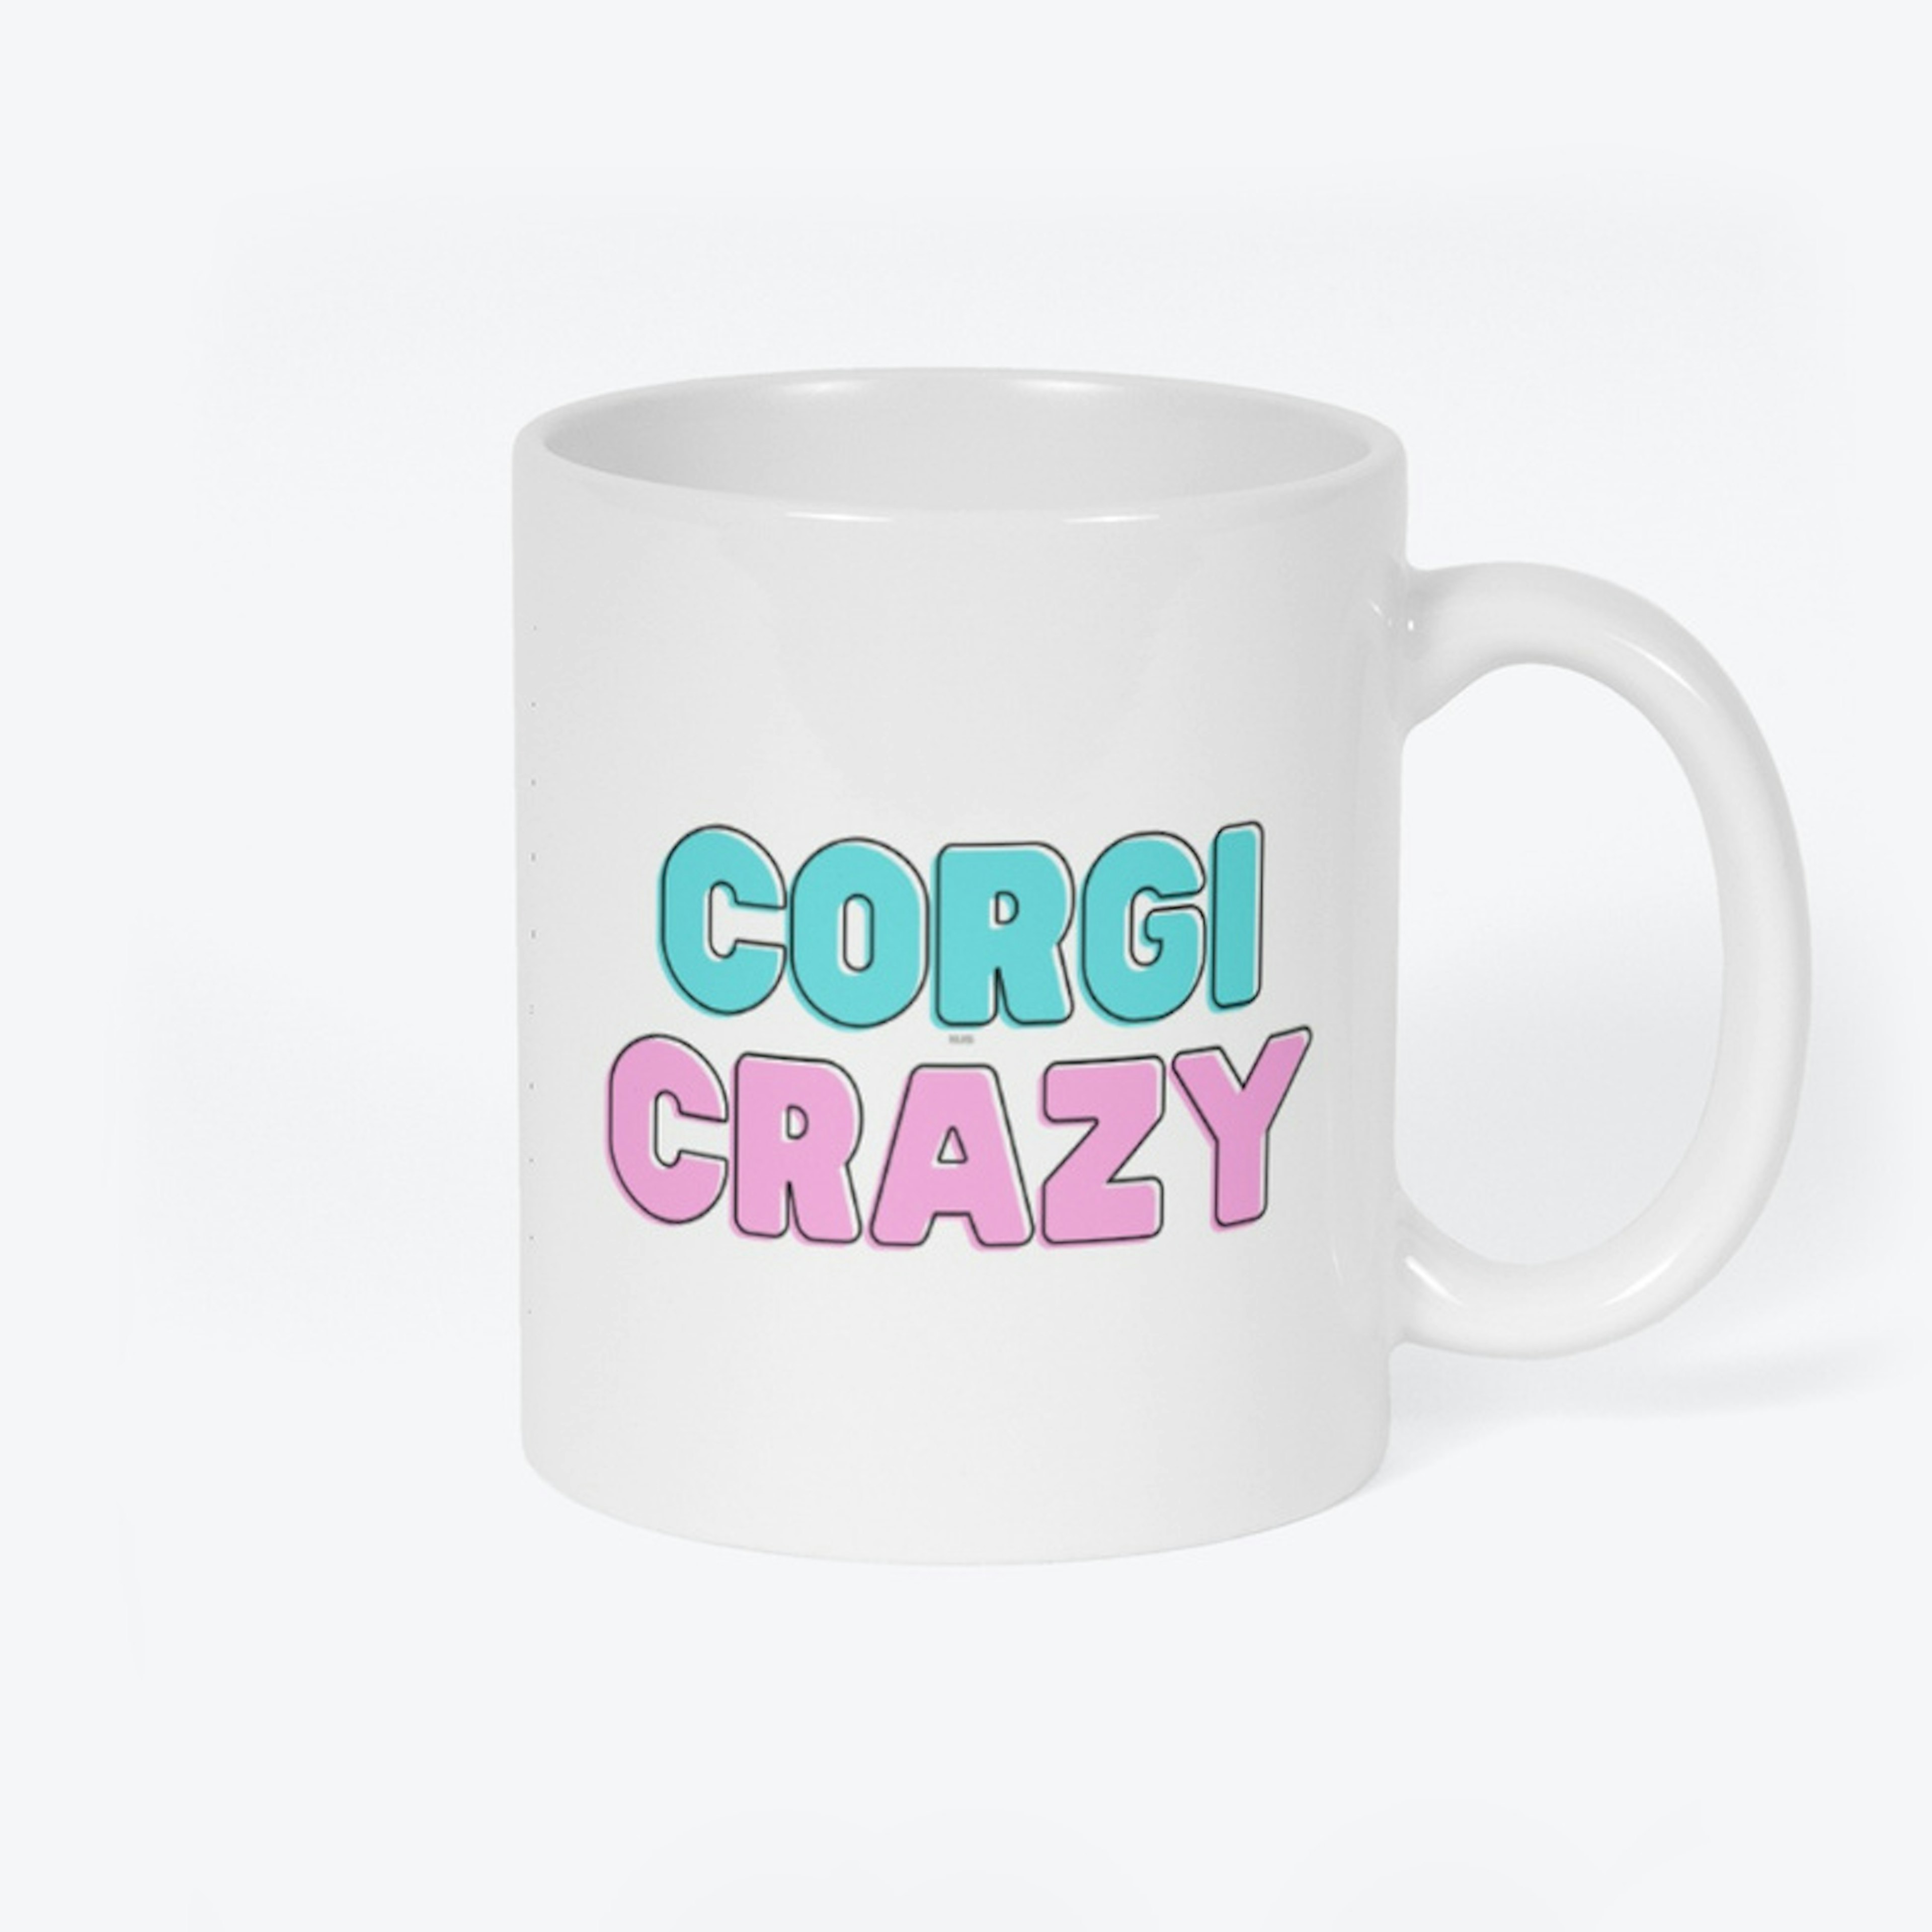 Corgi Crazy Mug - White